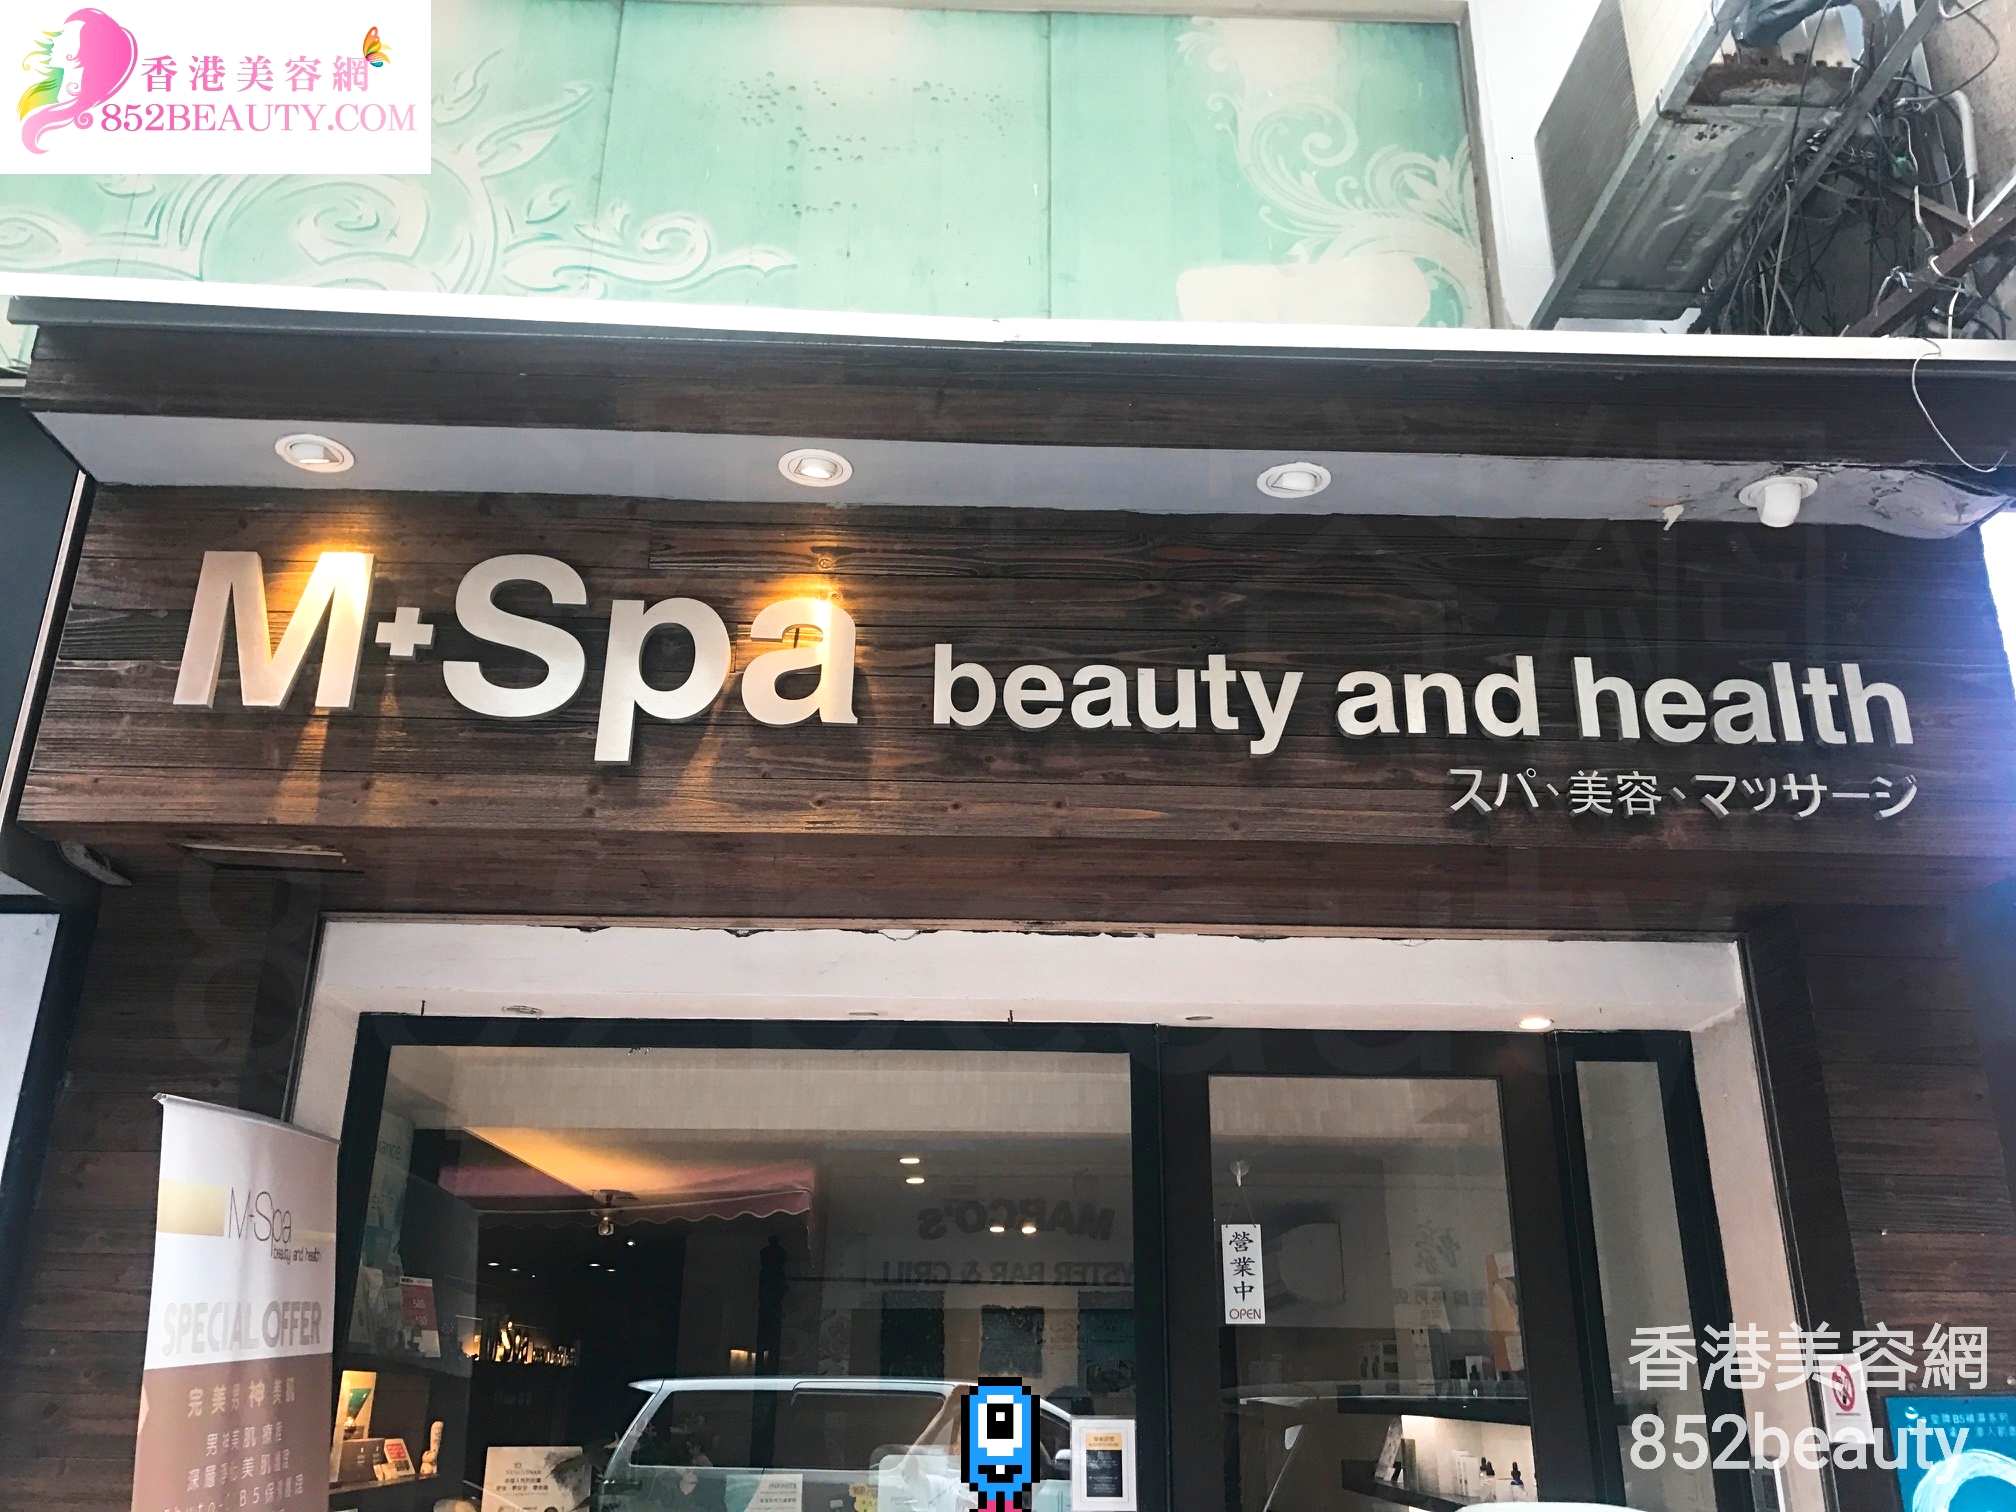 纤体瘦身: M+Spa beauty and health